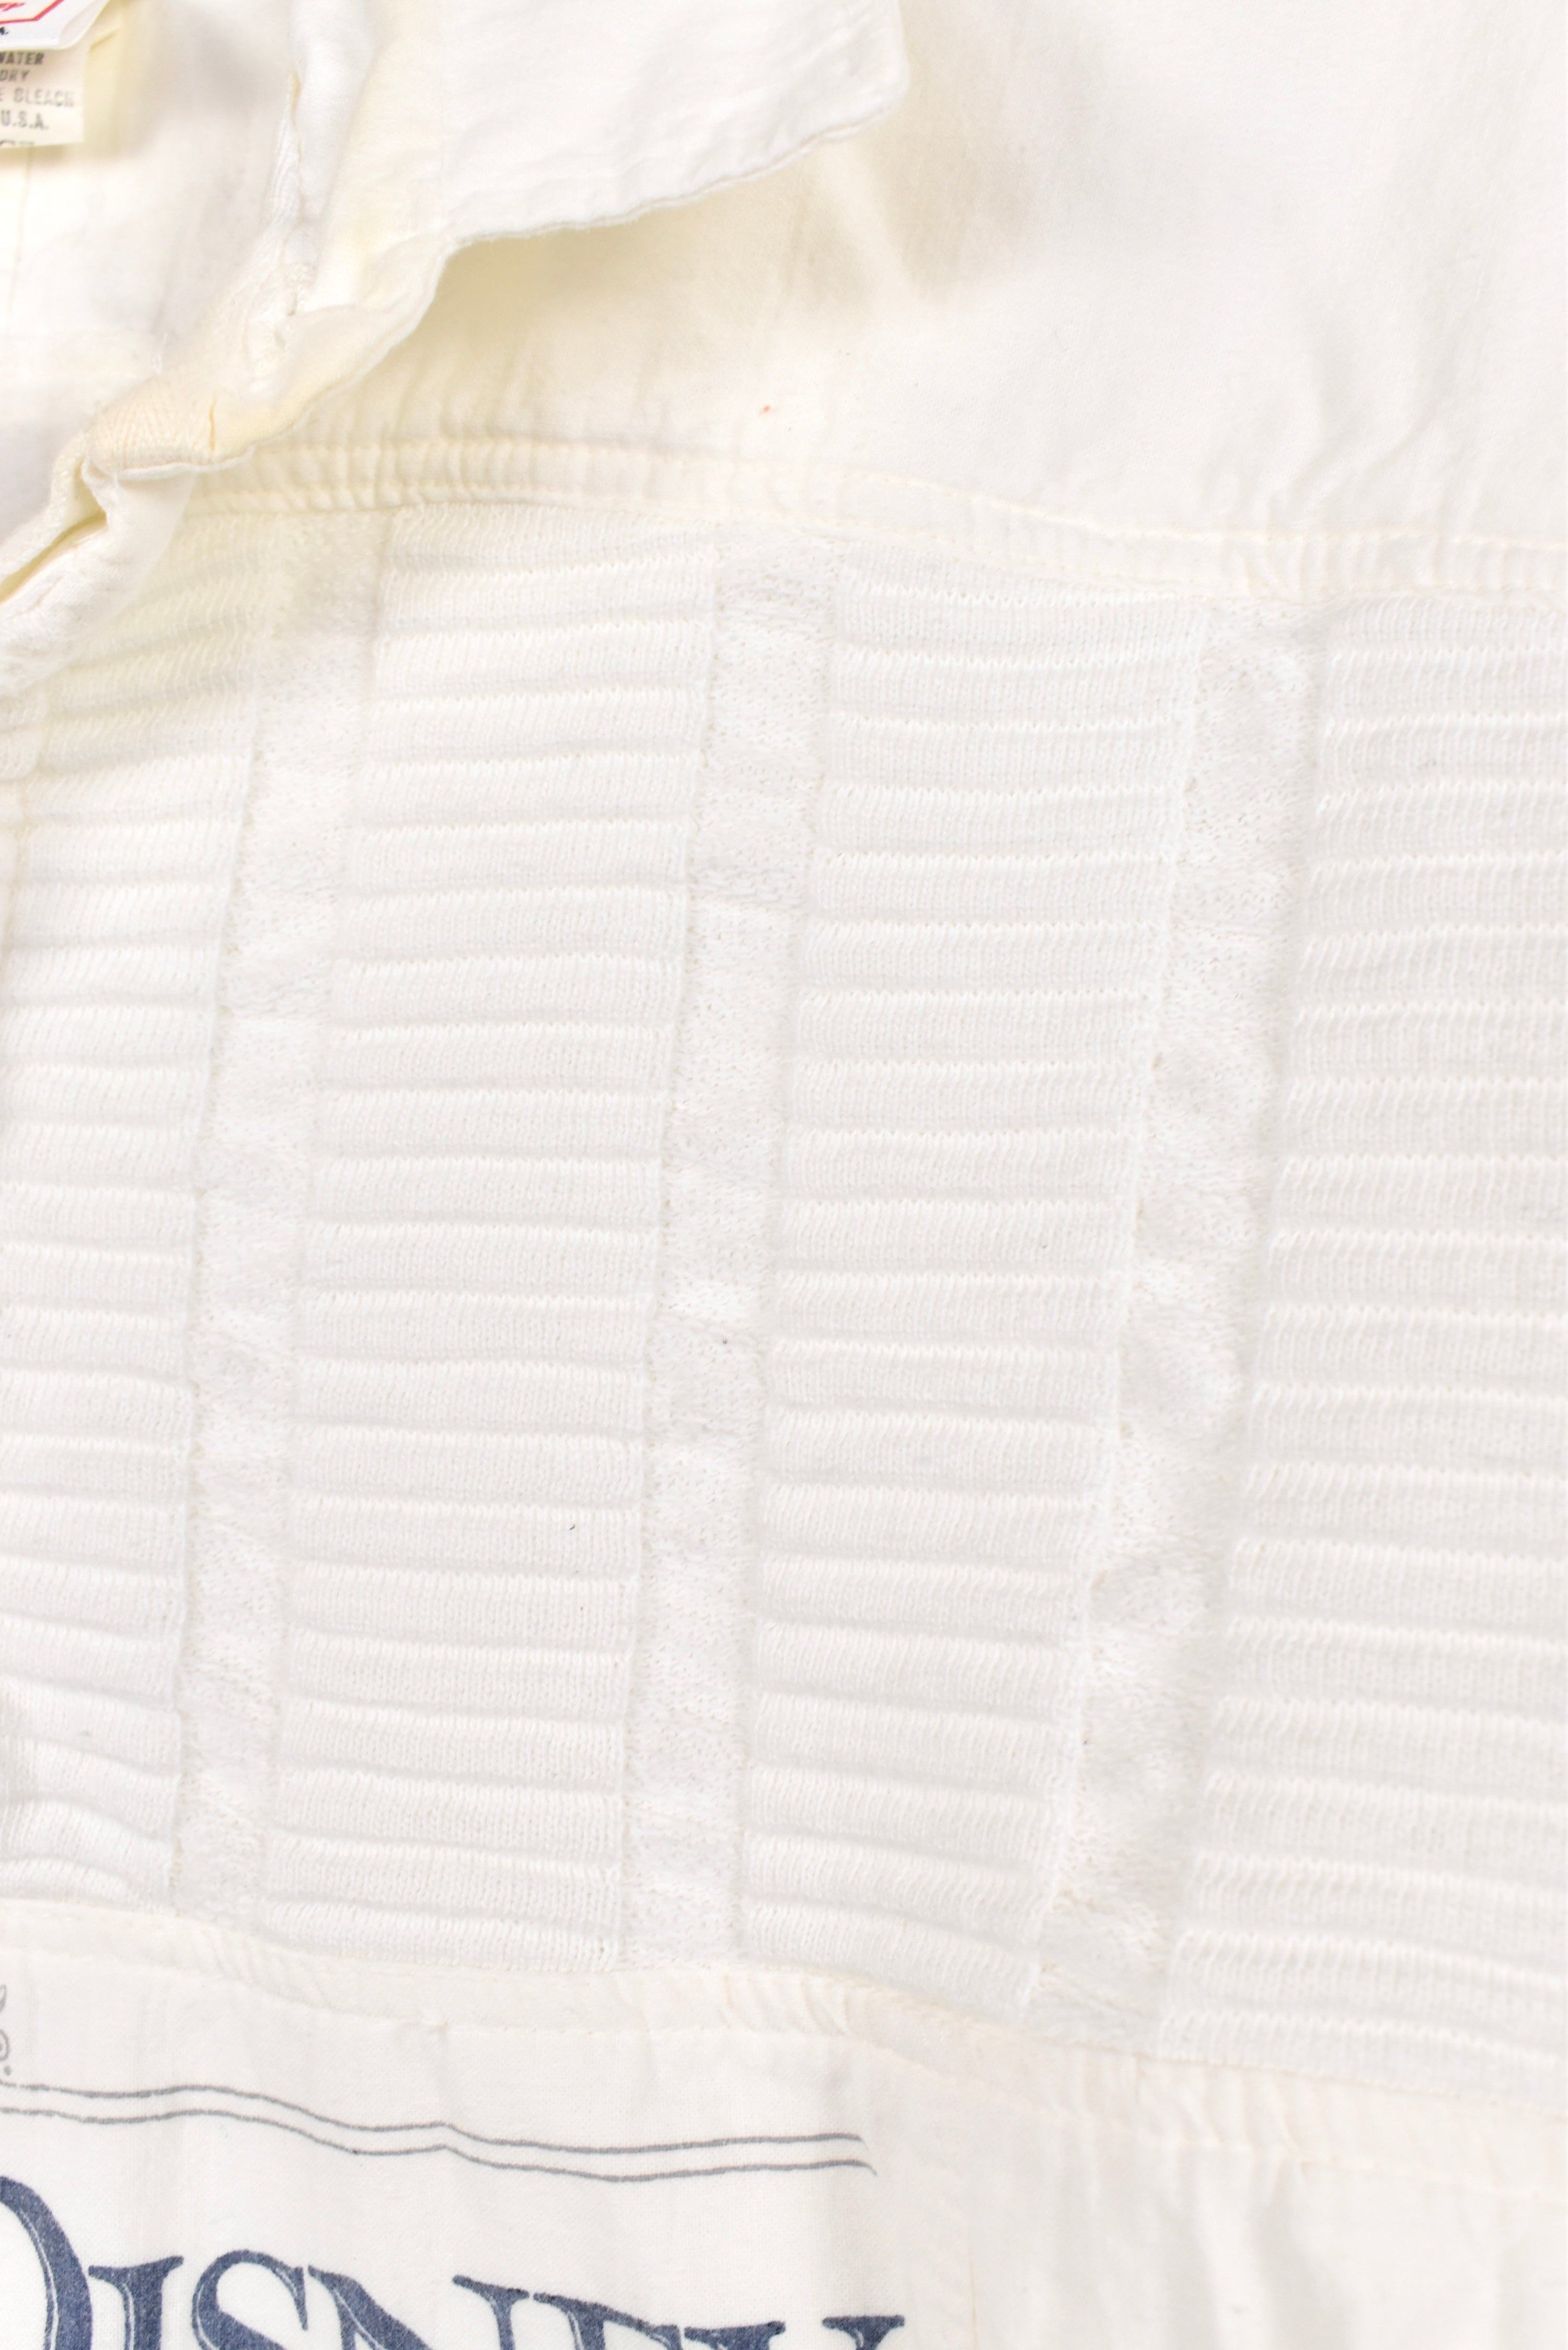 Vintage Disney sweatshirt, white collared jumper - AU M DISNEY / CARTOON